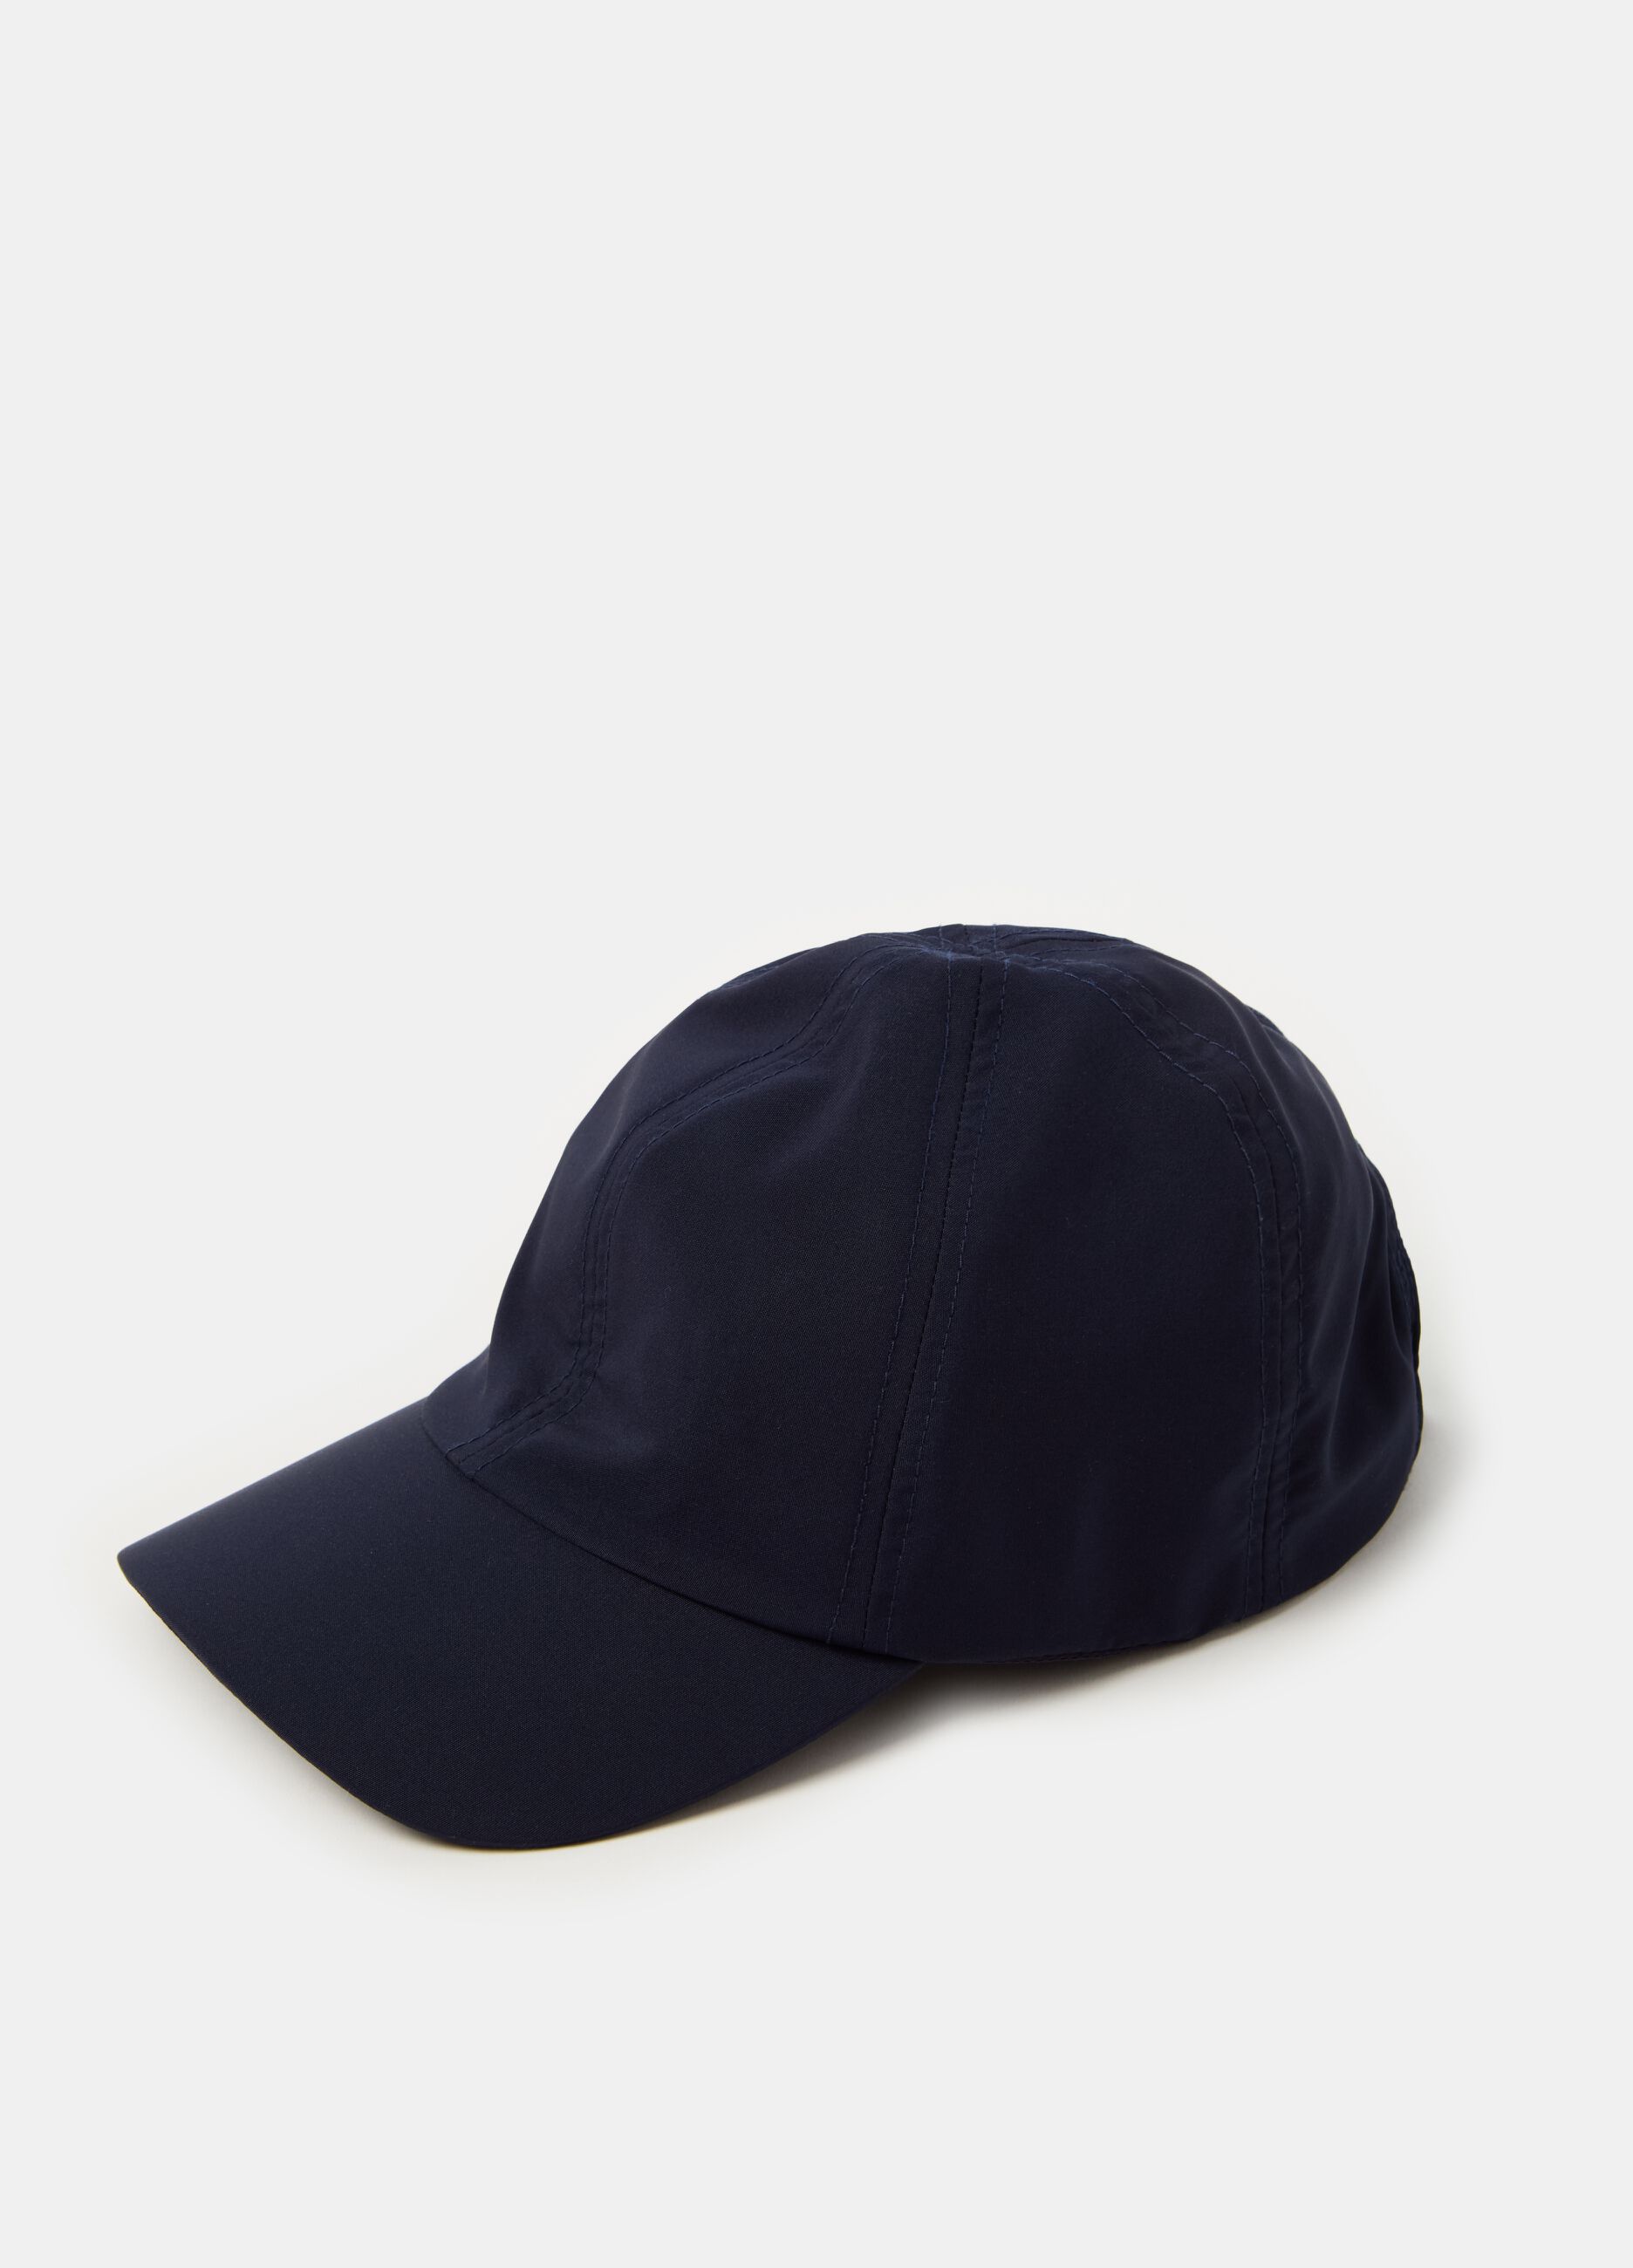 Waterproof baseball cap